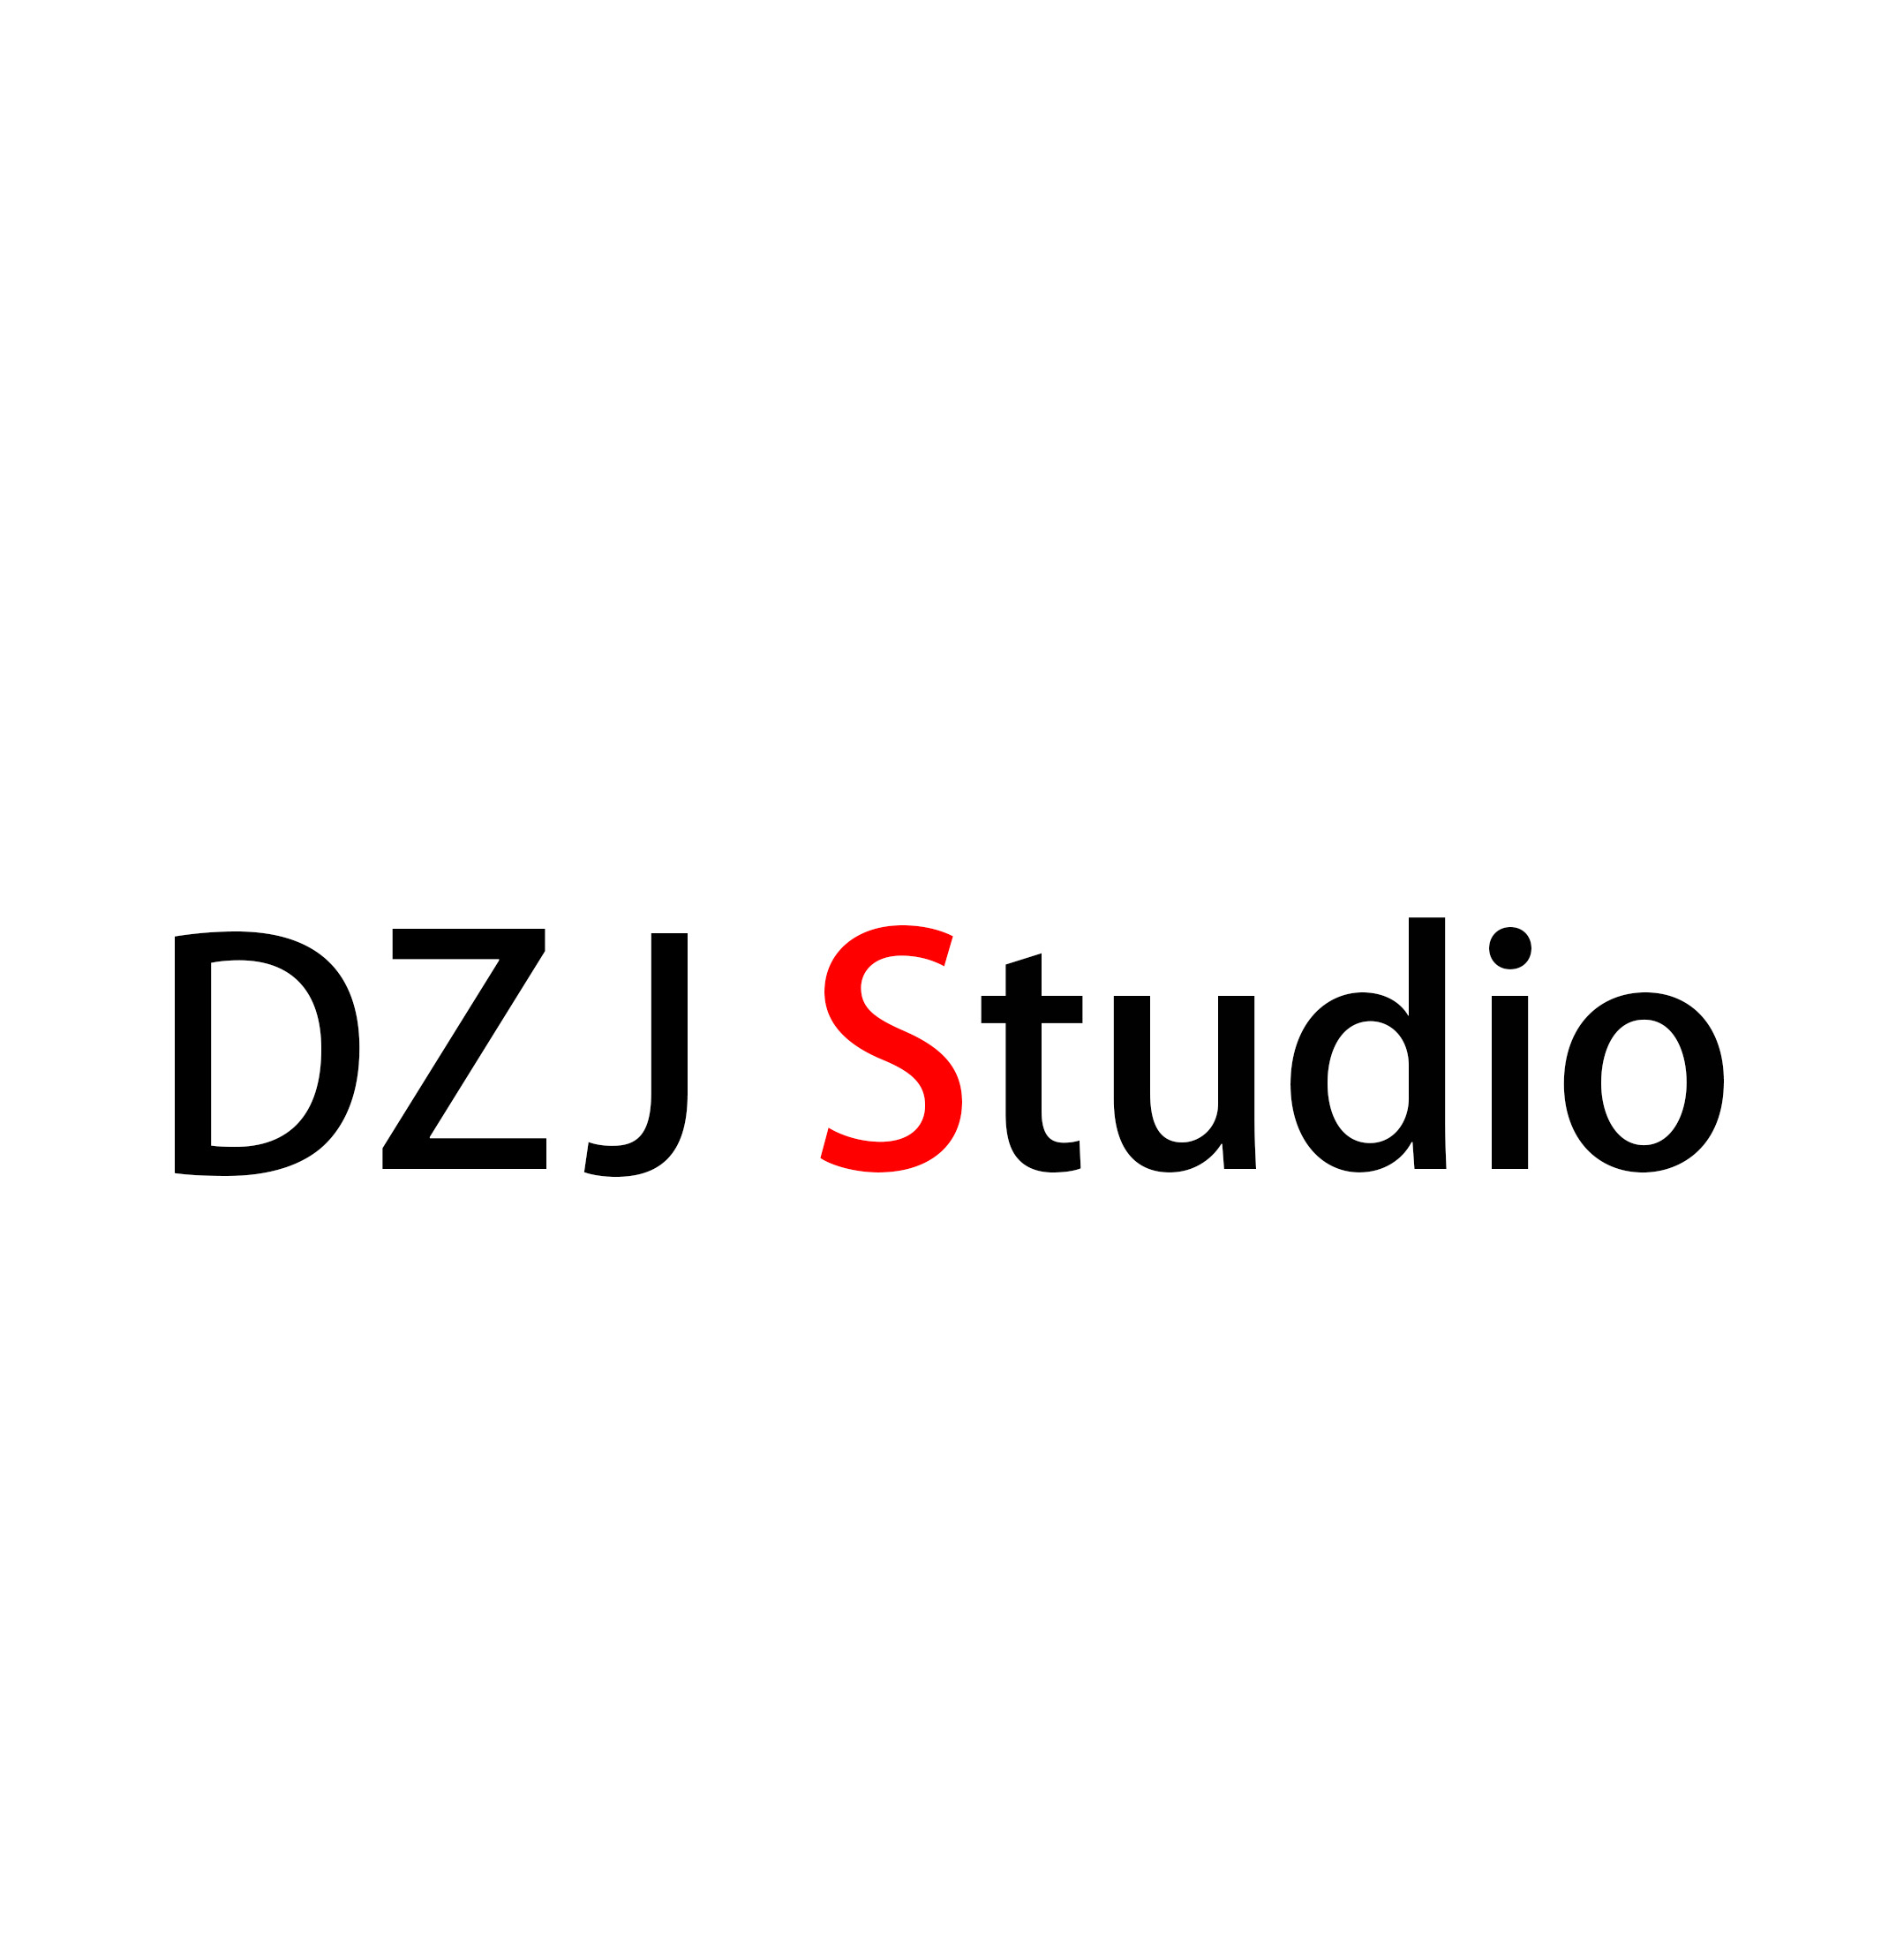 DZJ Studio